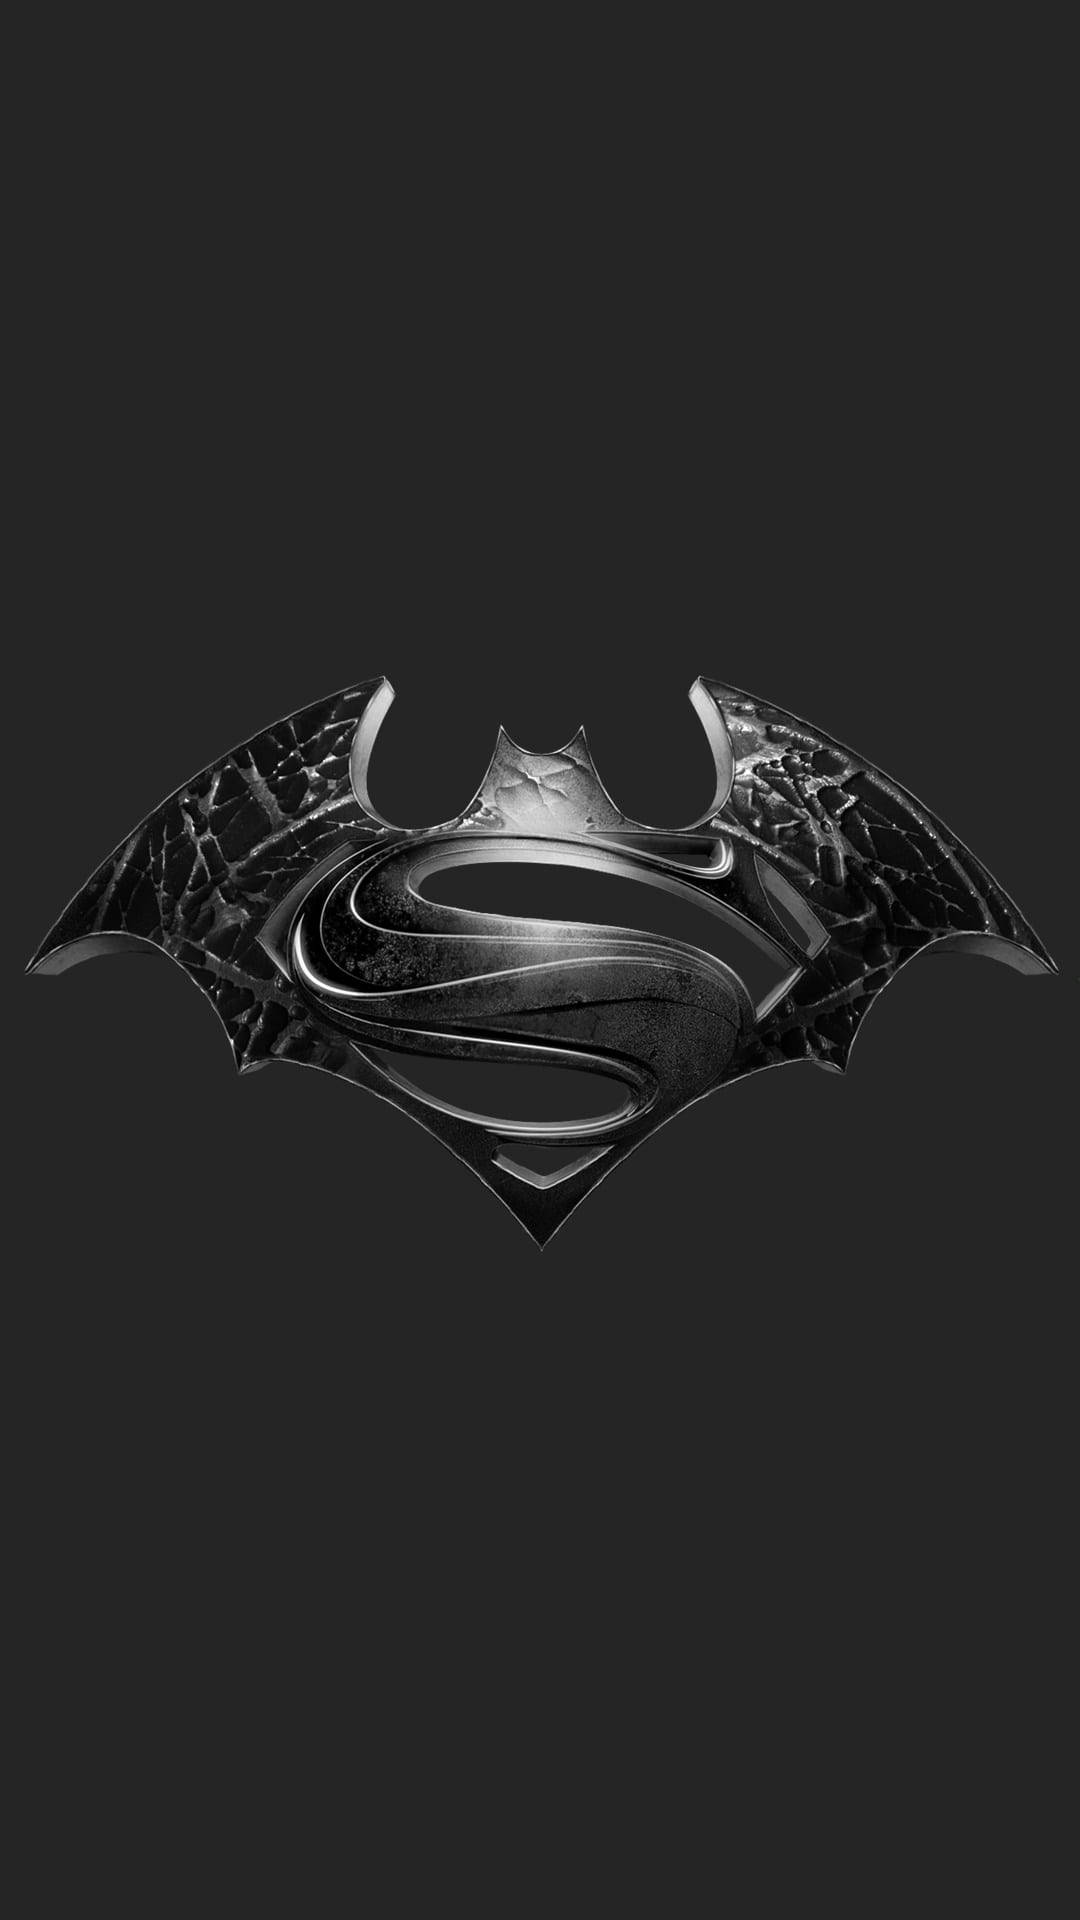 Metallischessuperman- Und Batman-logo Für Iphone. Wallpaper